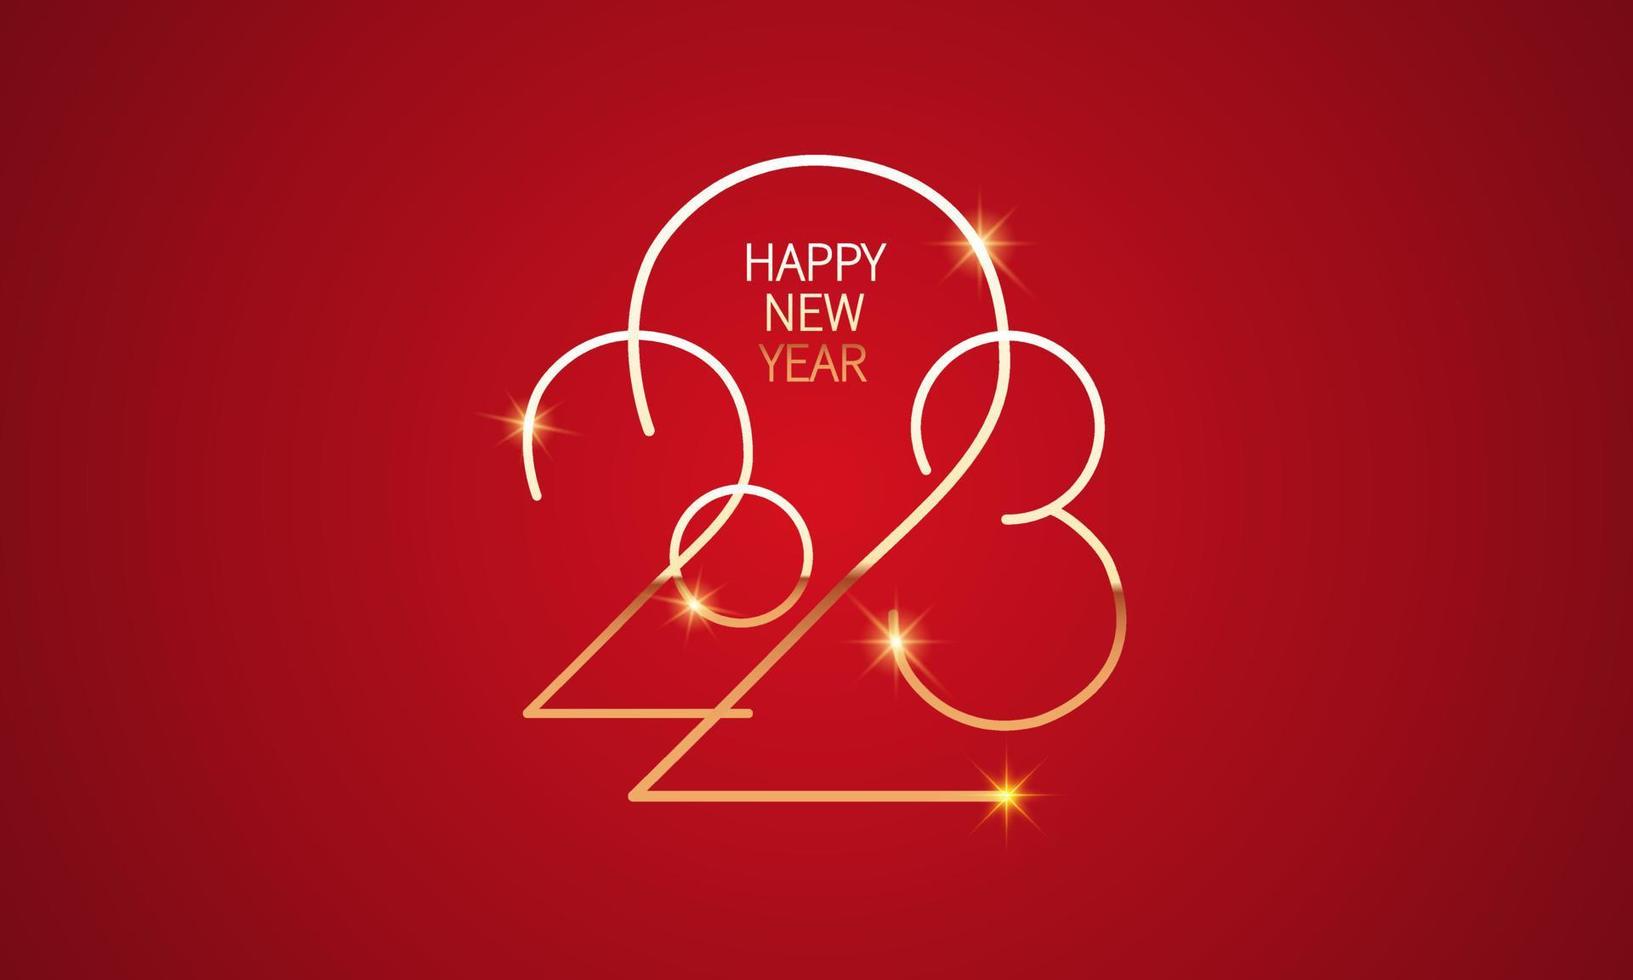 2023 gott nytt år bakgrundsdesign. gratulationskort, banderoll, affisch. vektor illustration.